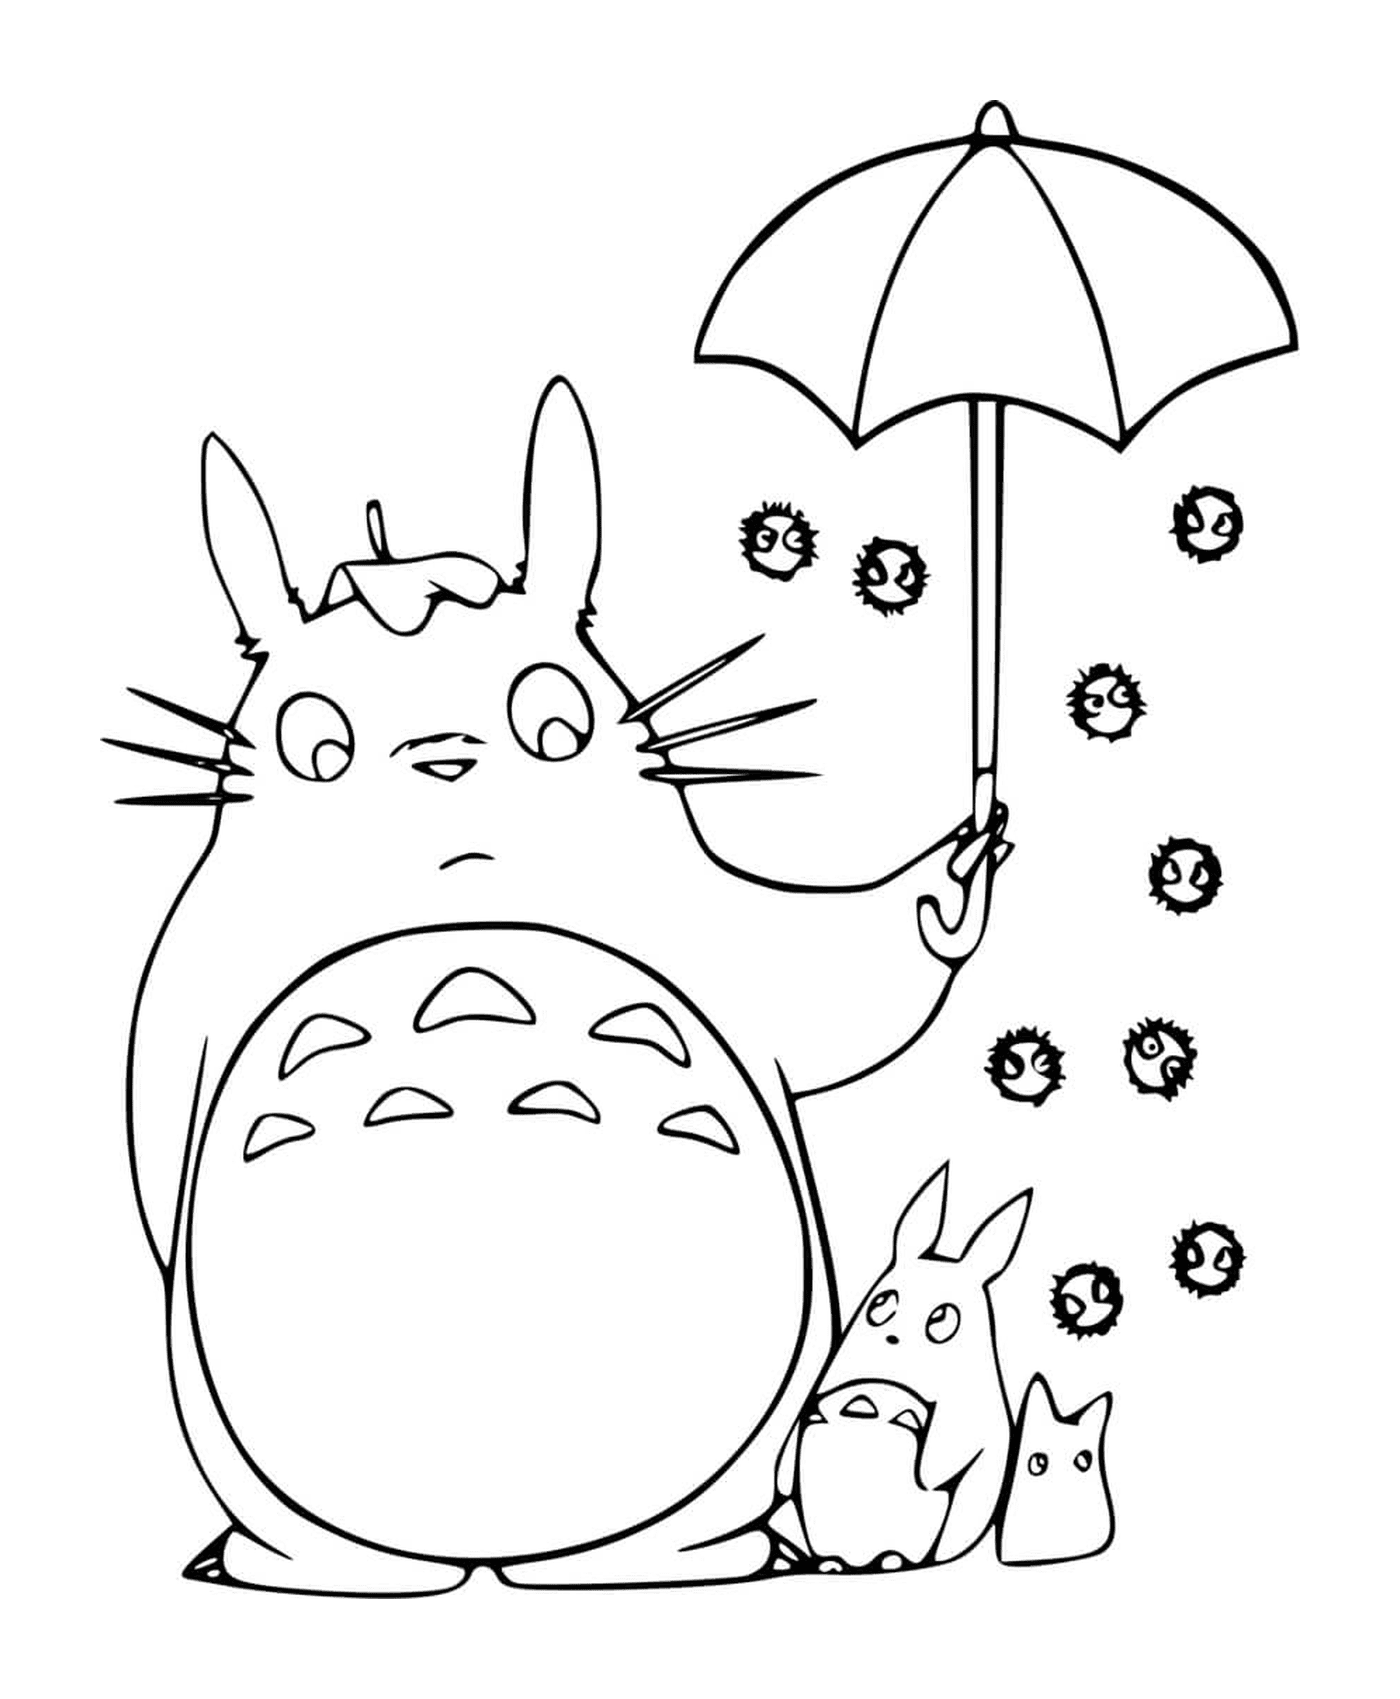  Totoro hält einen offenen Schirm mit einem Kind 